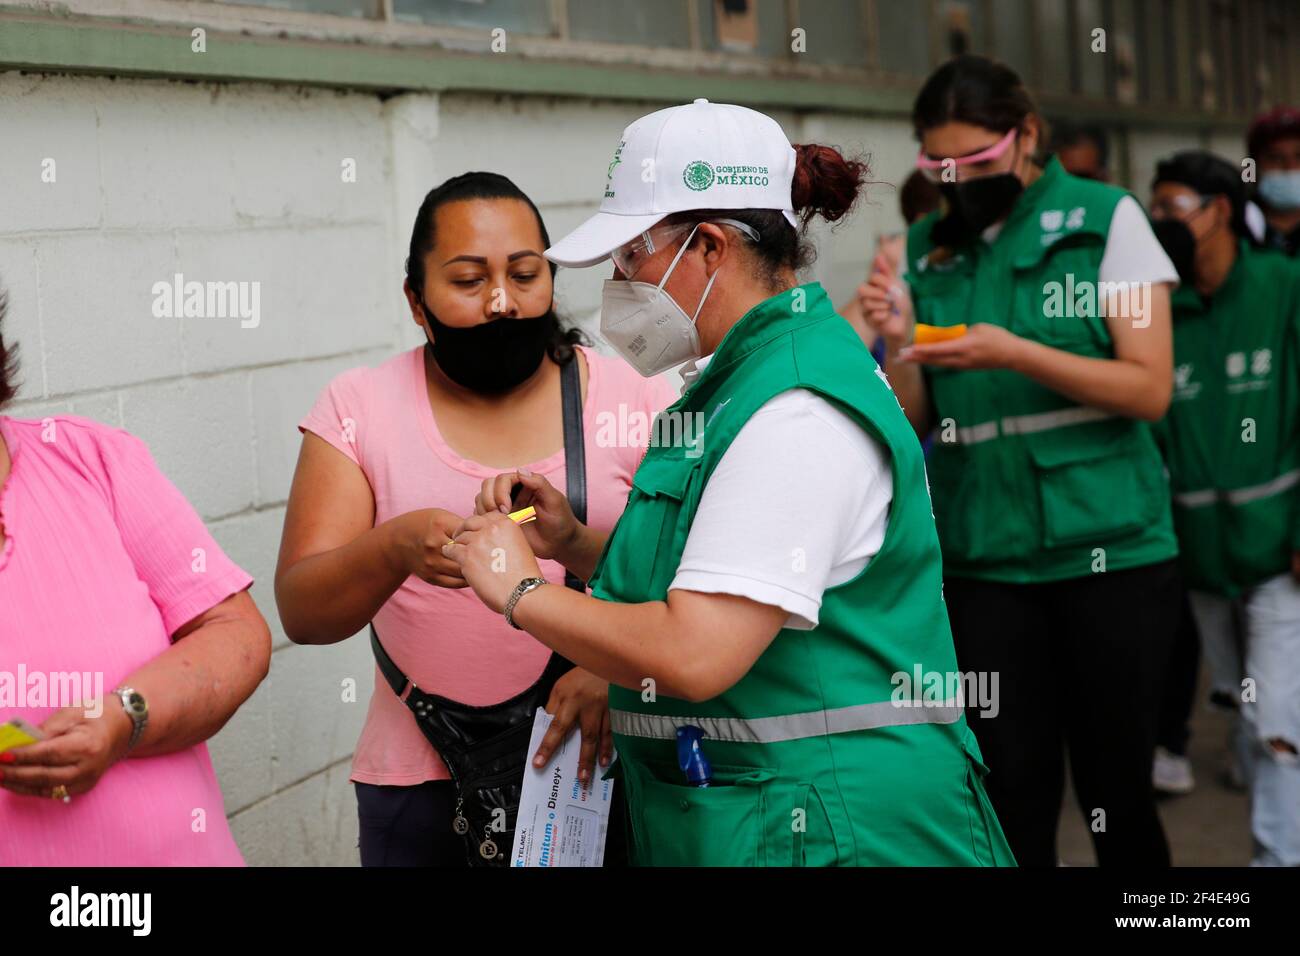 CIUDAD DE MÉXICO, MÉXICO - MARZO 18: Un anciano, durante el registro para poder recibir una dosis de la vacuna Covid-19, durante un programa de vacunación para personas mayores de 60 años, para inmunizar contra el SARS COV-2 que causa la enfermedad de Covid-19. El 18 de marzo de 2021 en la Ciudad de México, México CRÉDITO: Angel Morales Rizo/Grupo Eyepix/el acceso fotográfico Foto de stock